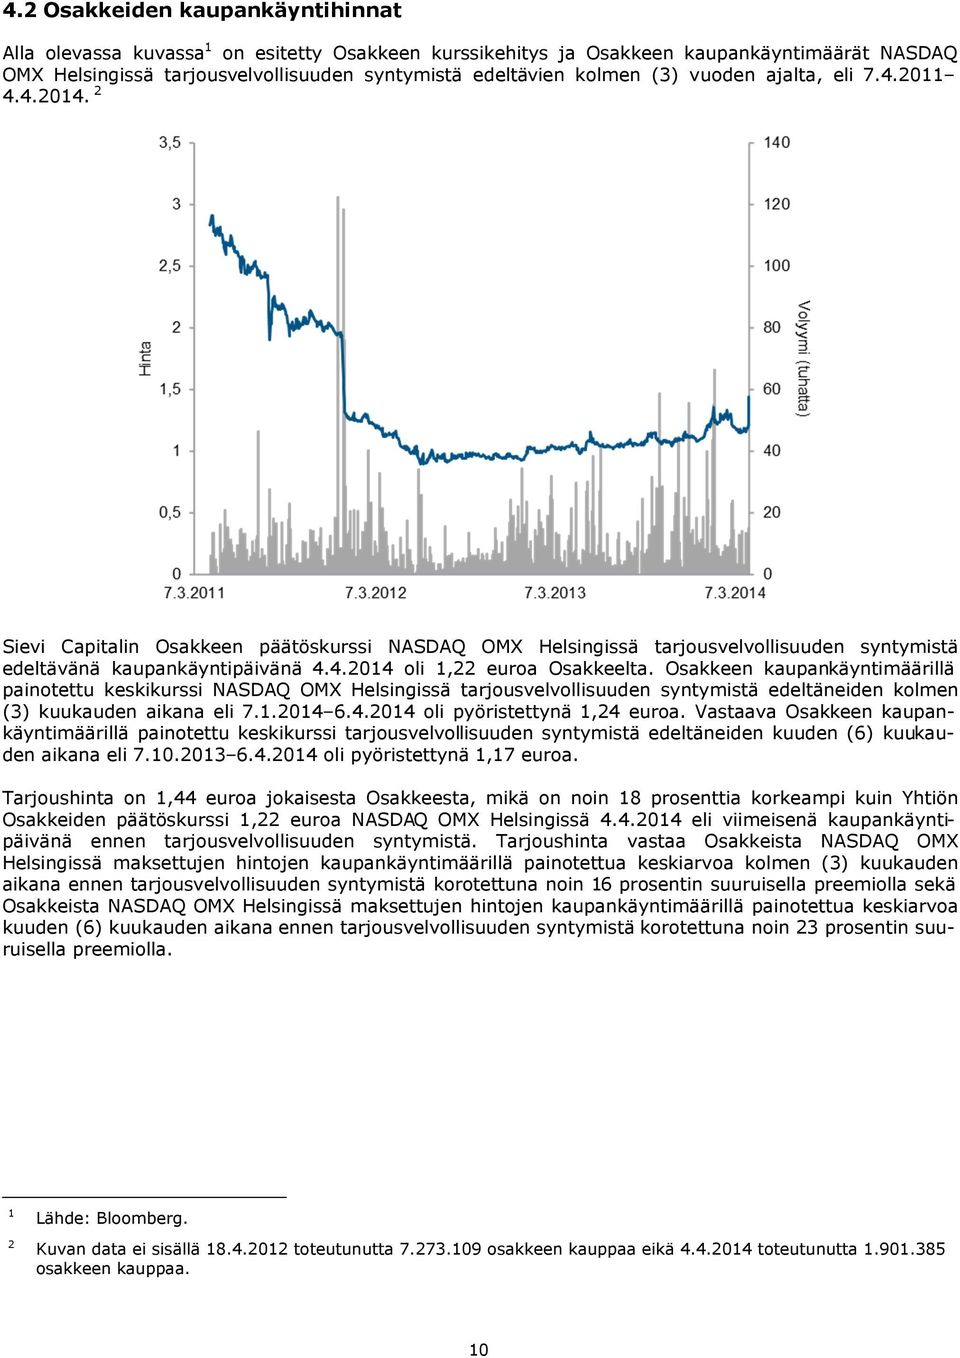 Osakkeen kaupankäyntimäärillä painotettu keskikurssi NASDAQ OMX Helsingissä tarjousvelvollisuuden syntymistä edeltäneiden kolmen (3) kuukauden aikana eli 7.1.2014 6.4.2014 oli pyöristettynä 1,24 euroa.